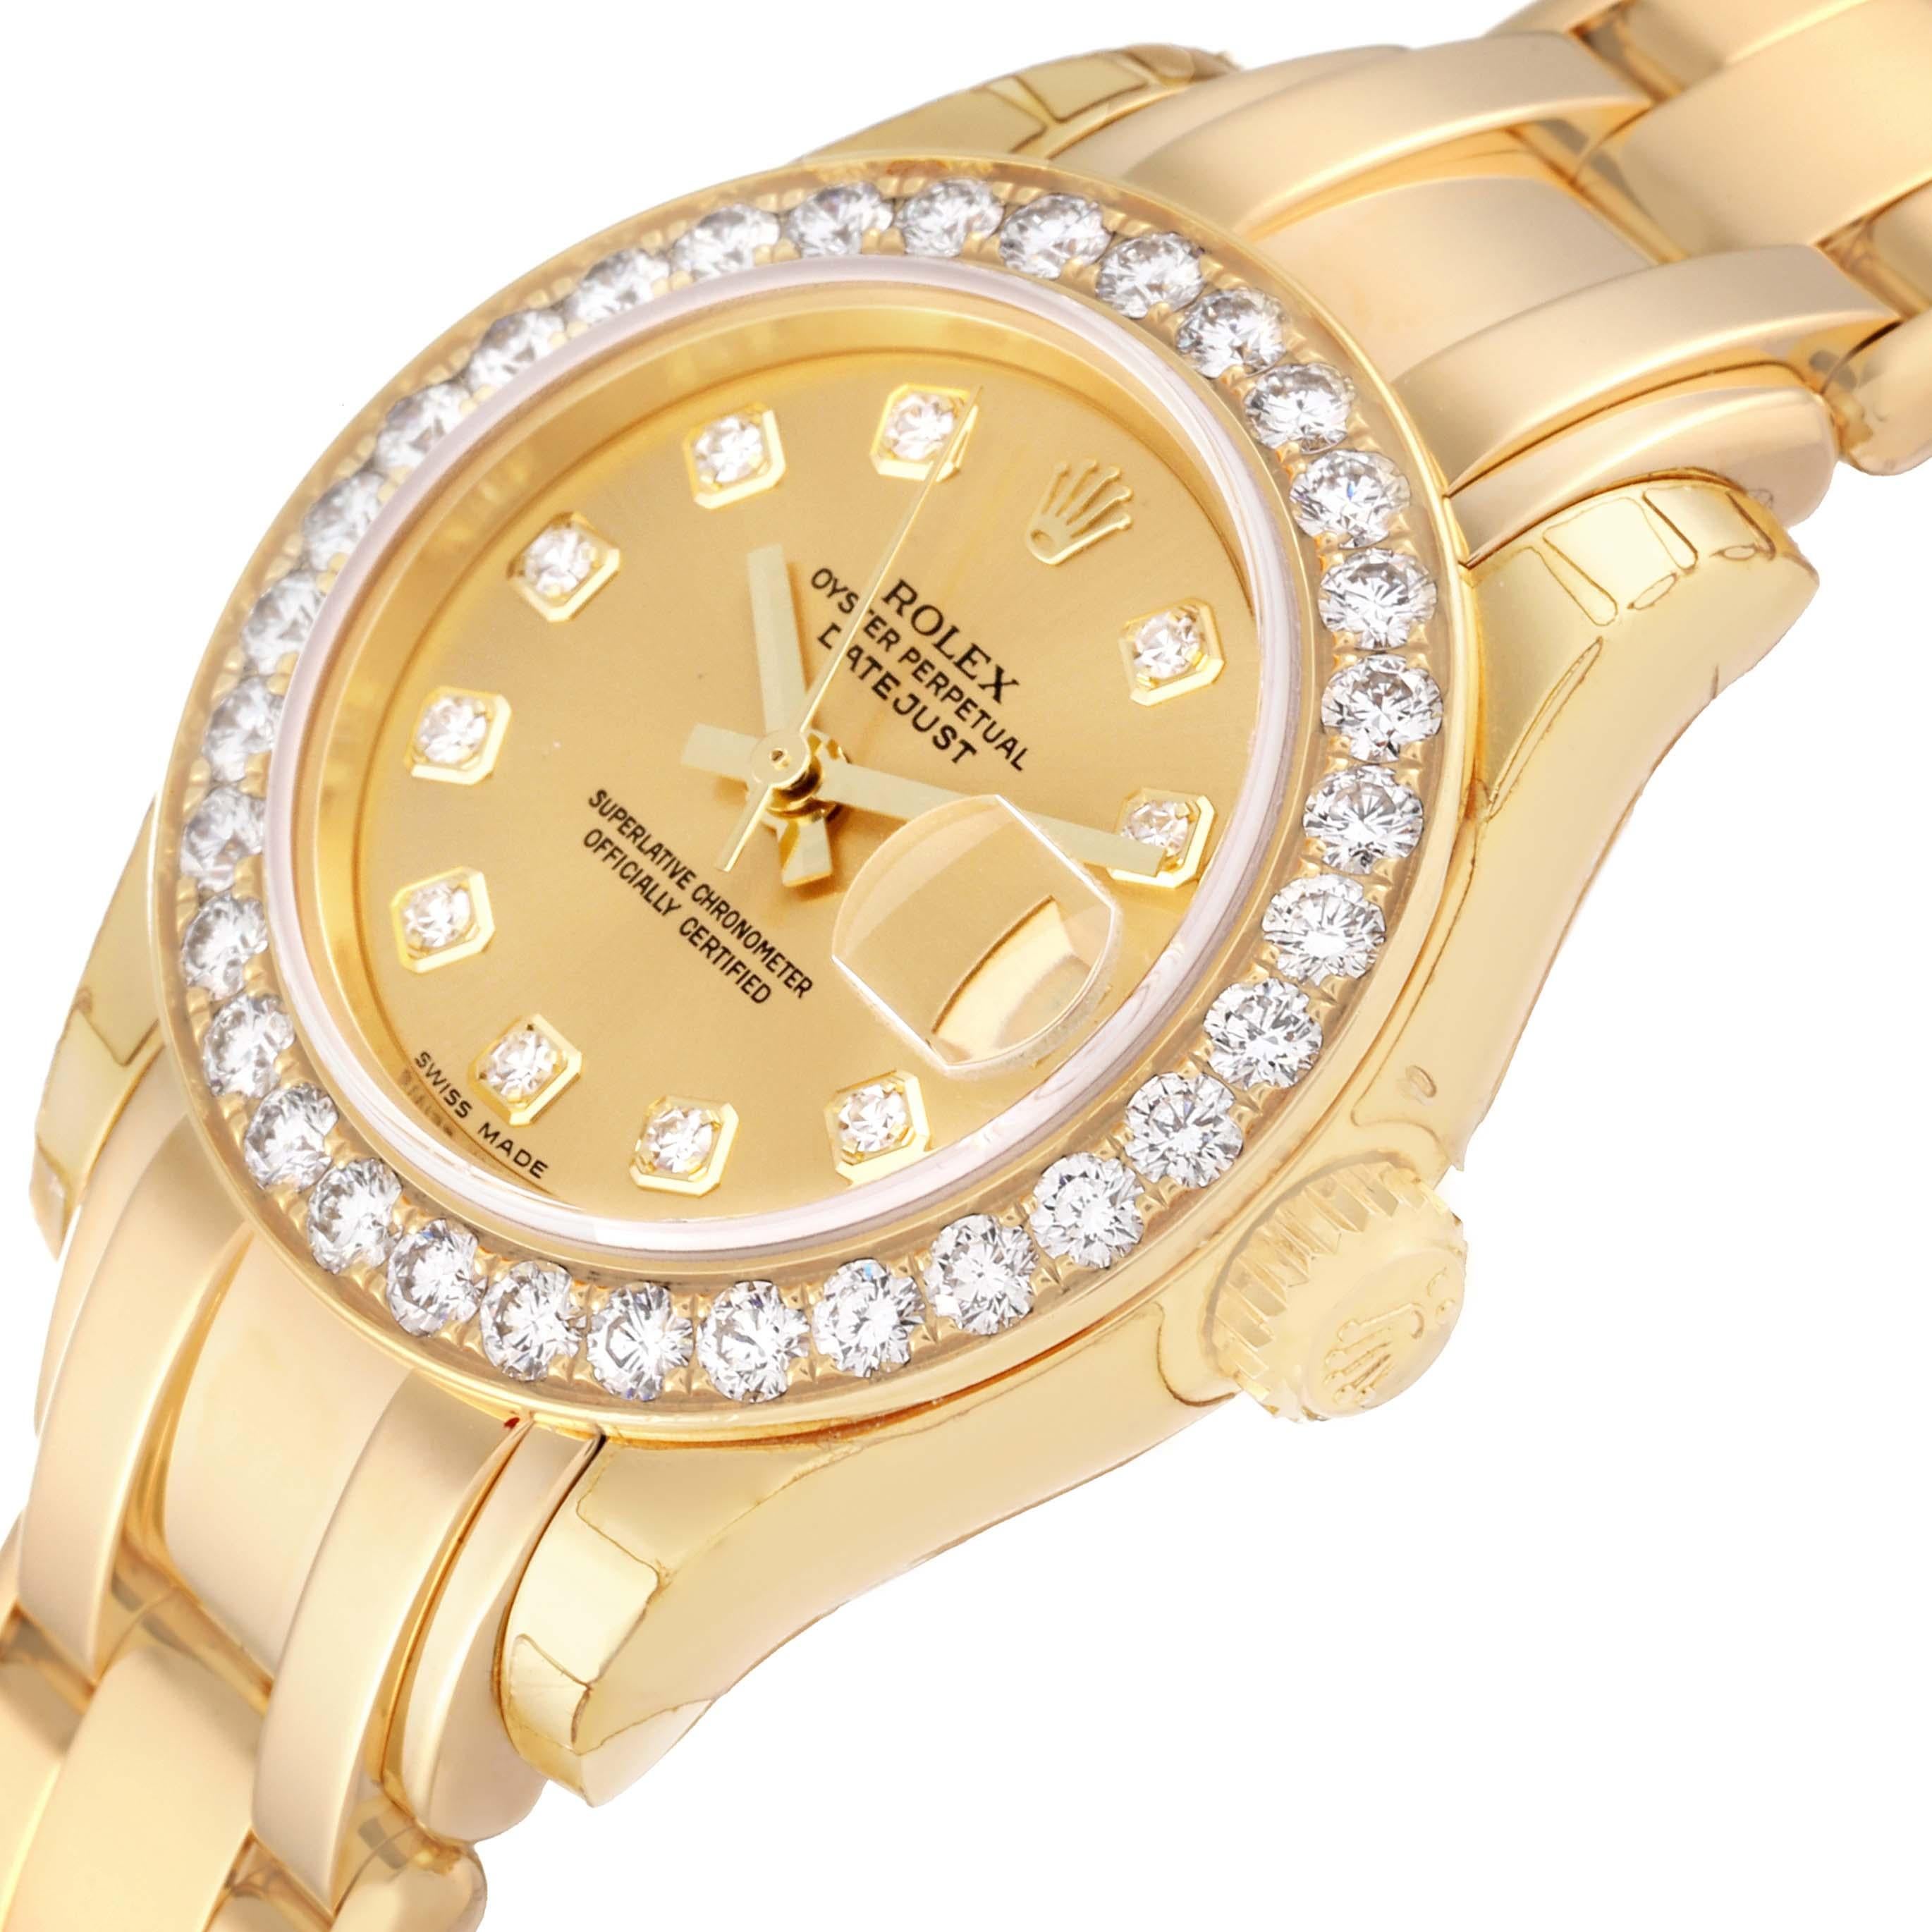 Women's Rolex Pearlmaster Yellow Gold Diamond Ladies Watch 80298 Unworn NOS